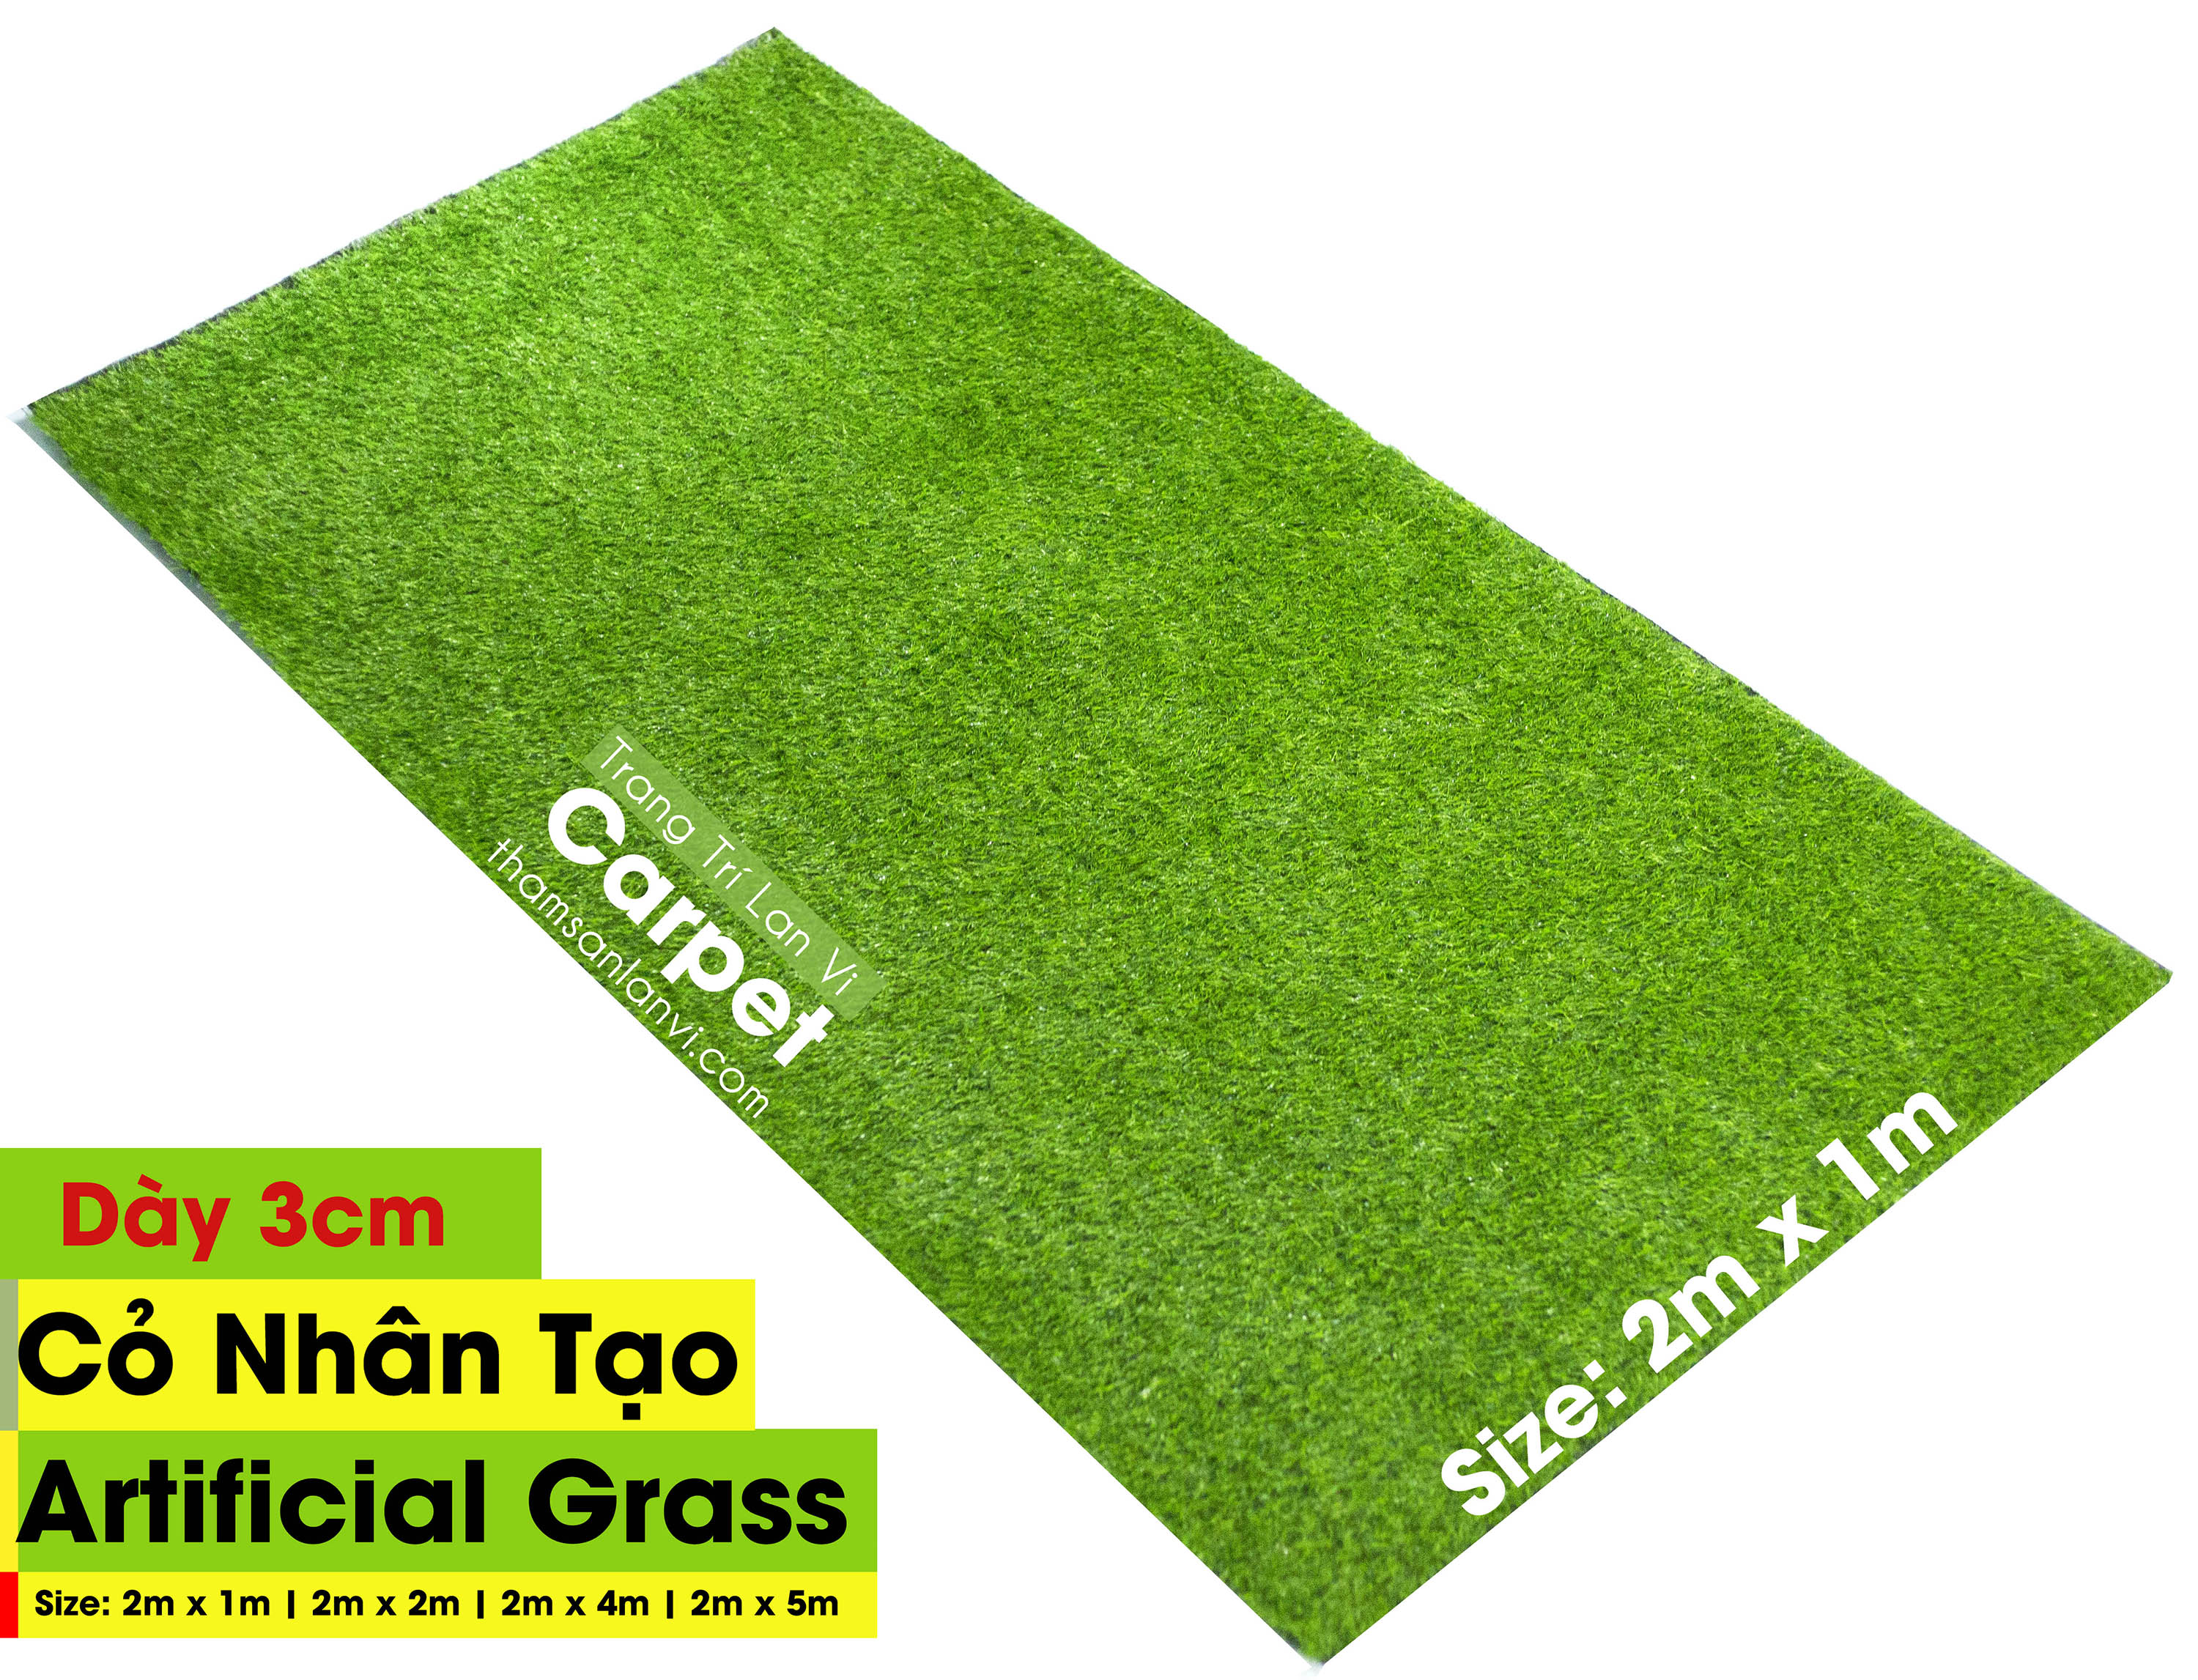 Thảm cỏ nhân tạo dày 3cm (không phai màu) độ bên cao, thoát nước, trang trí nhà cửa, sân vườn